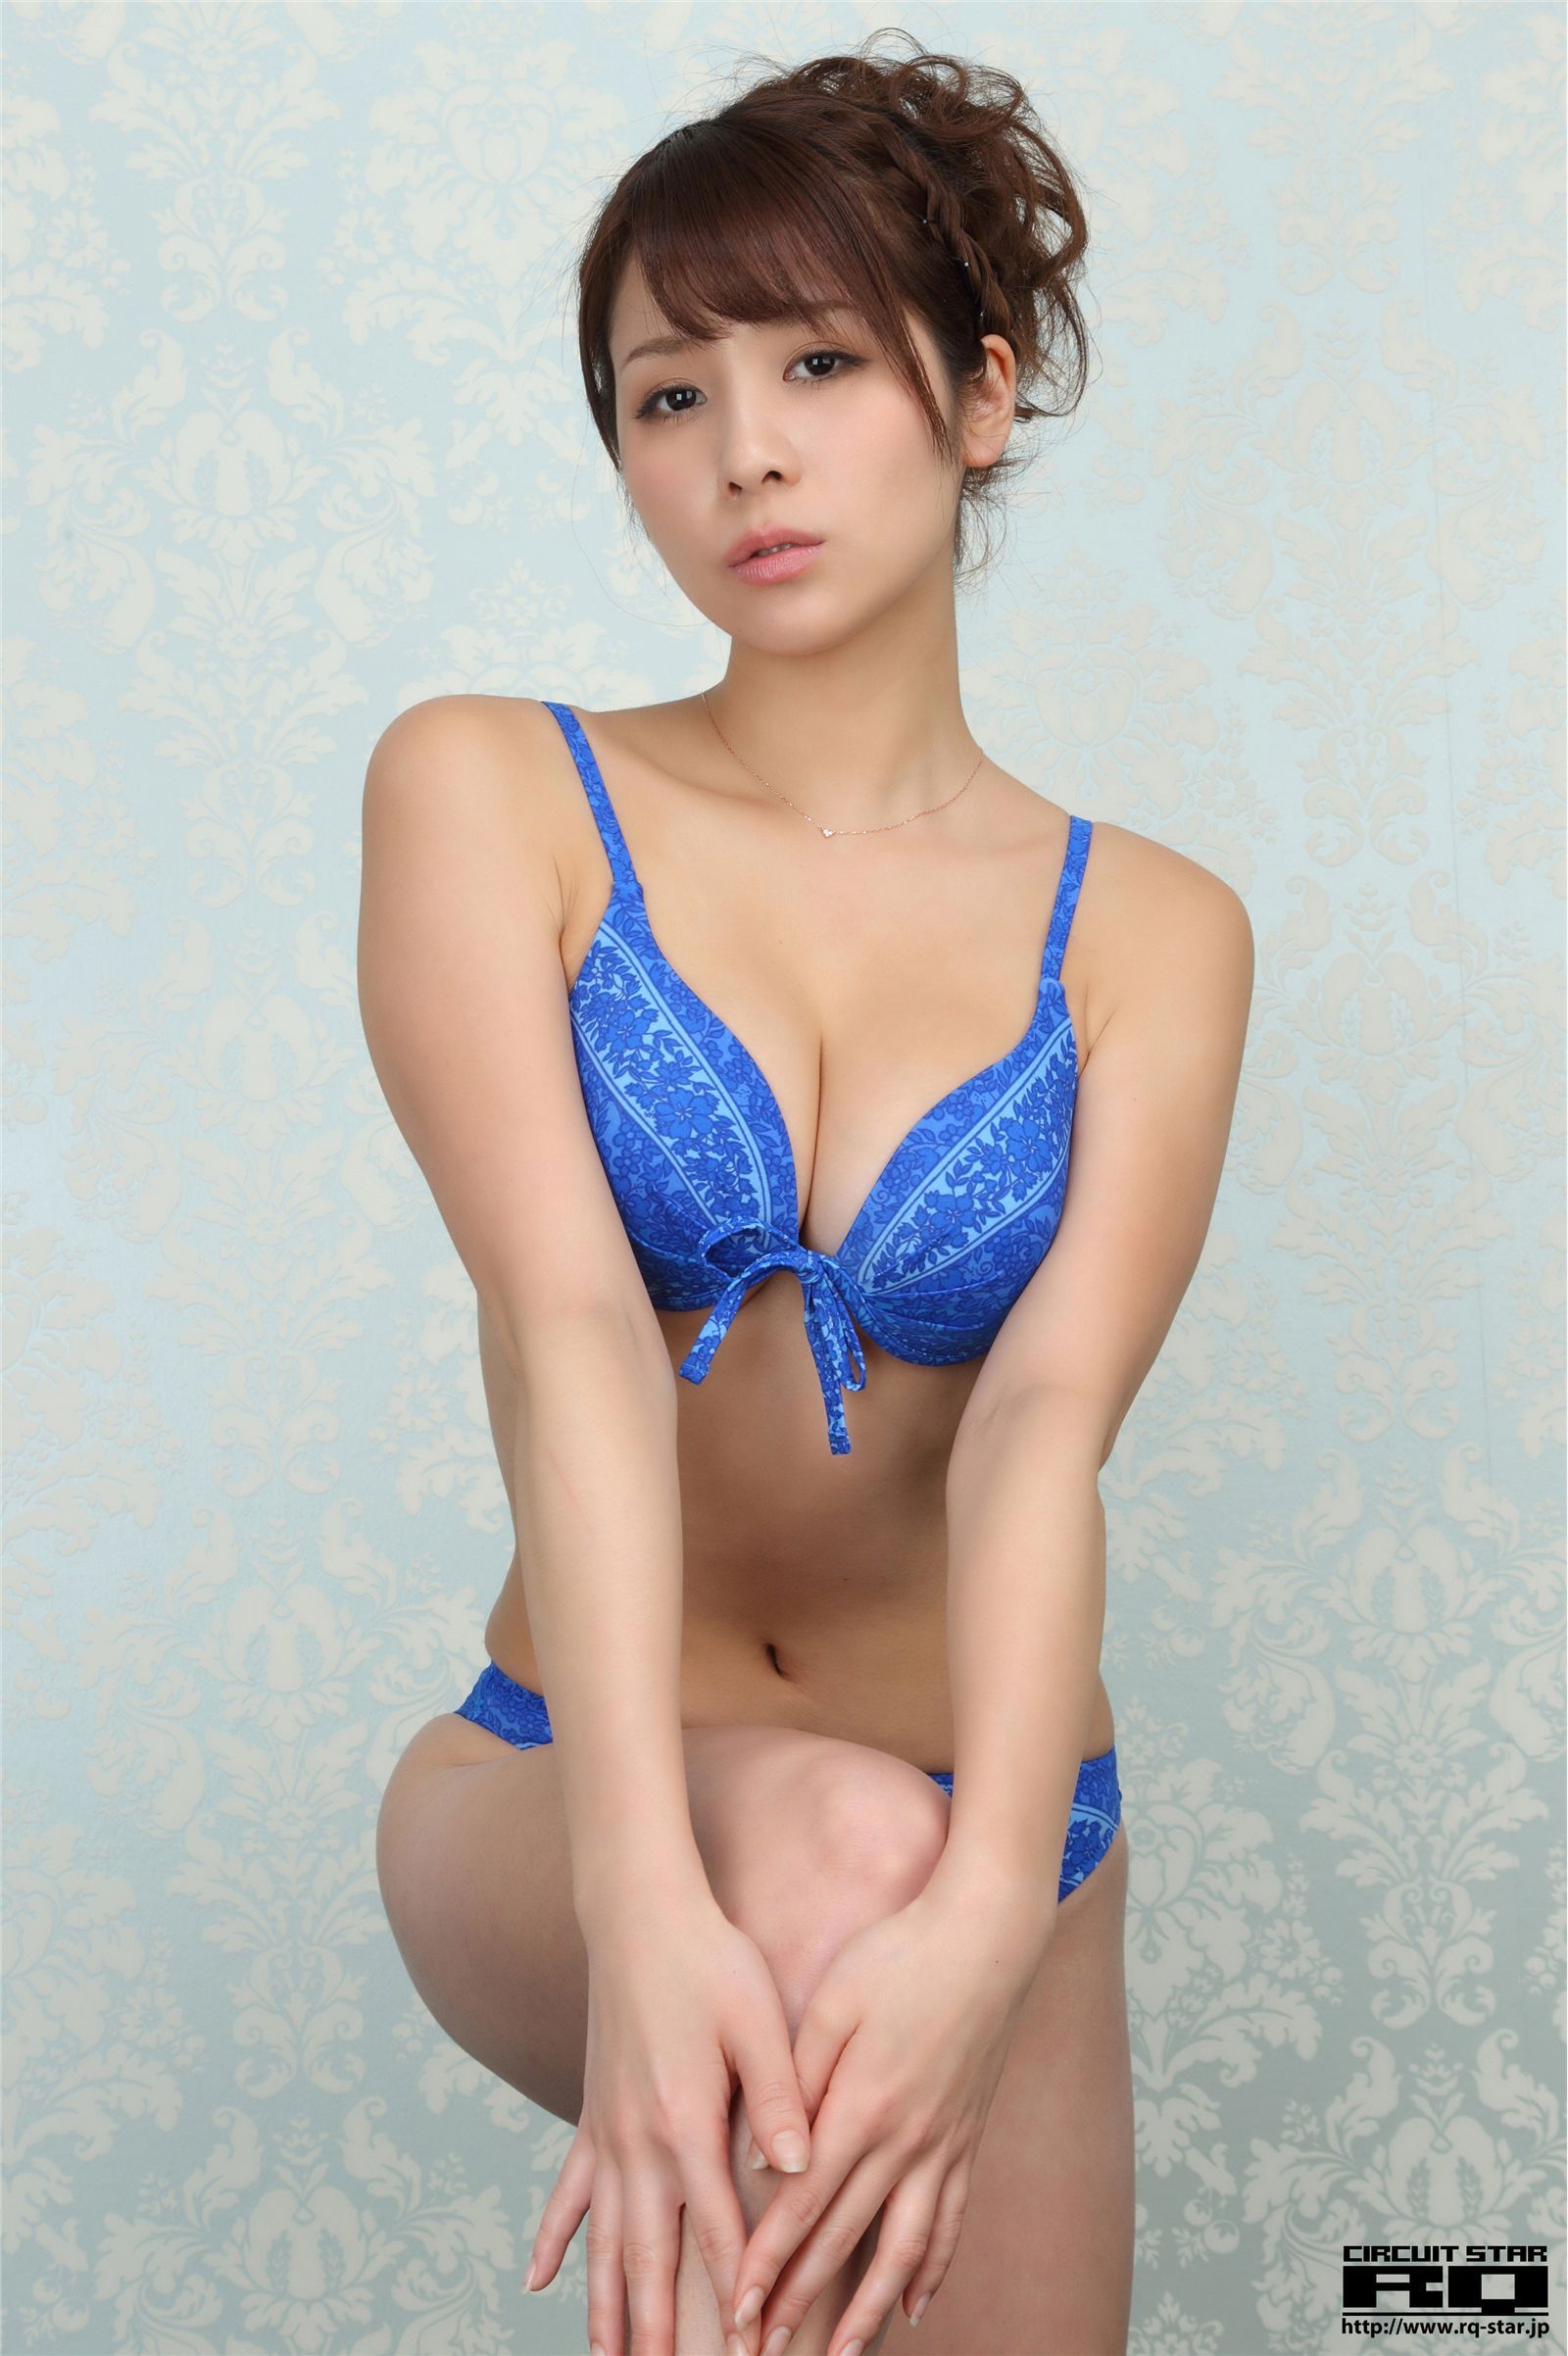 立花サキ [RQ-STAR] NO.00591 Saki Tachibana 日本制服性感美女写真